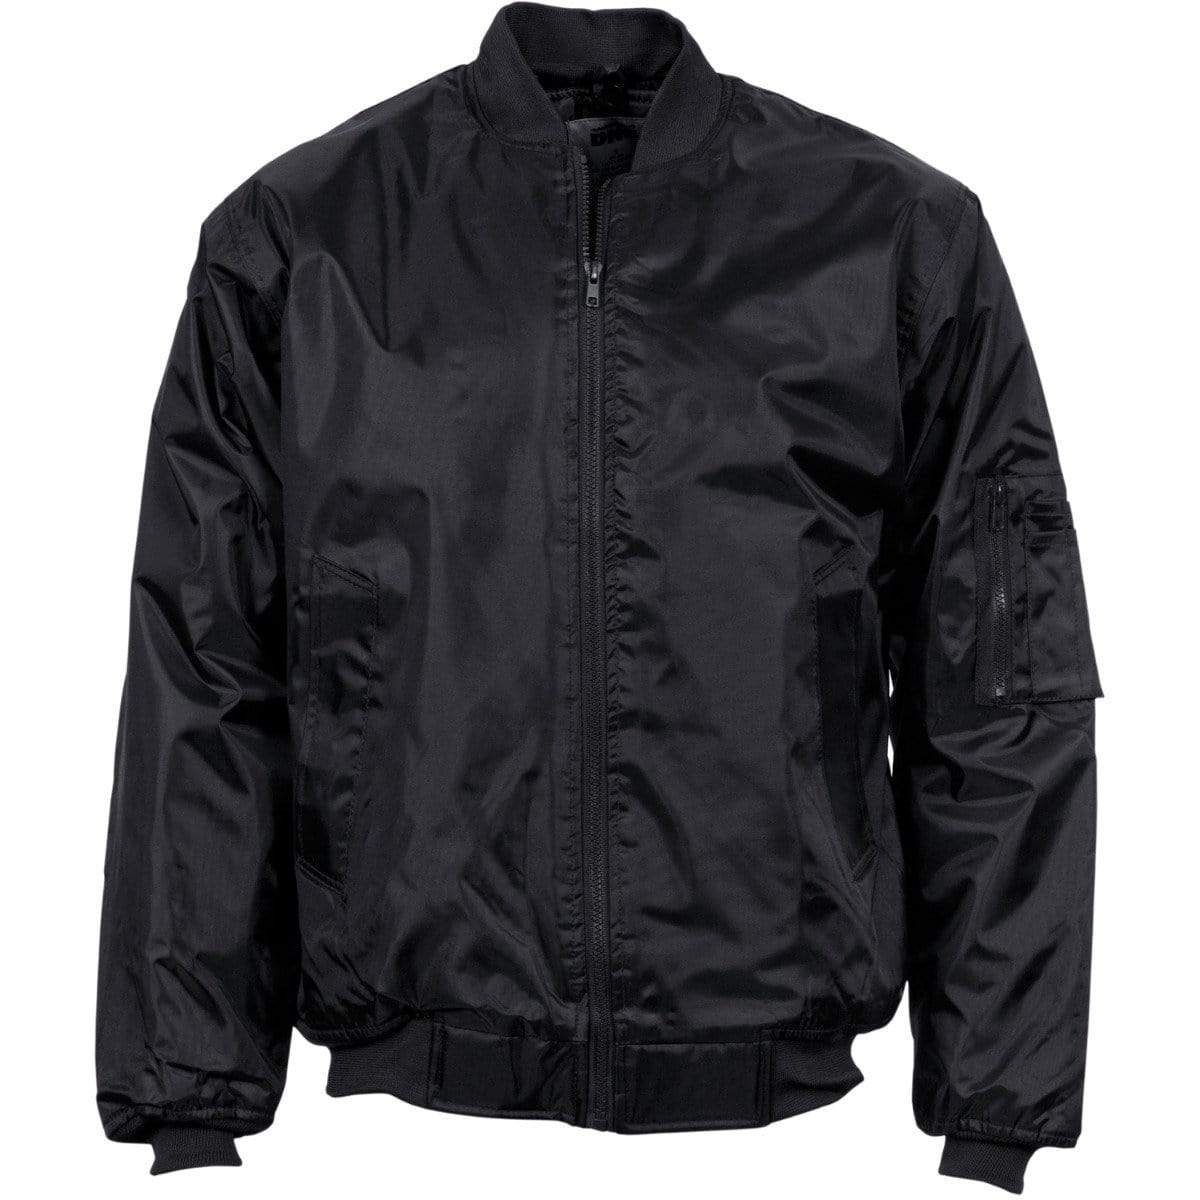 Dnc Workwear Plastic Zips Flying Jacket - 3605 Corporate Wear DNC Workwear Black S 